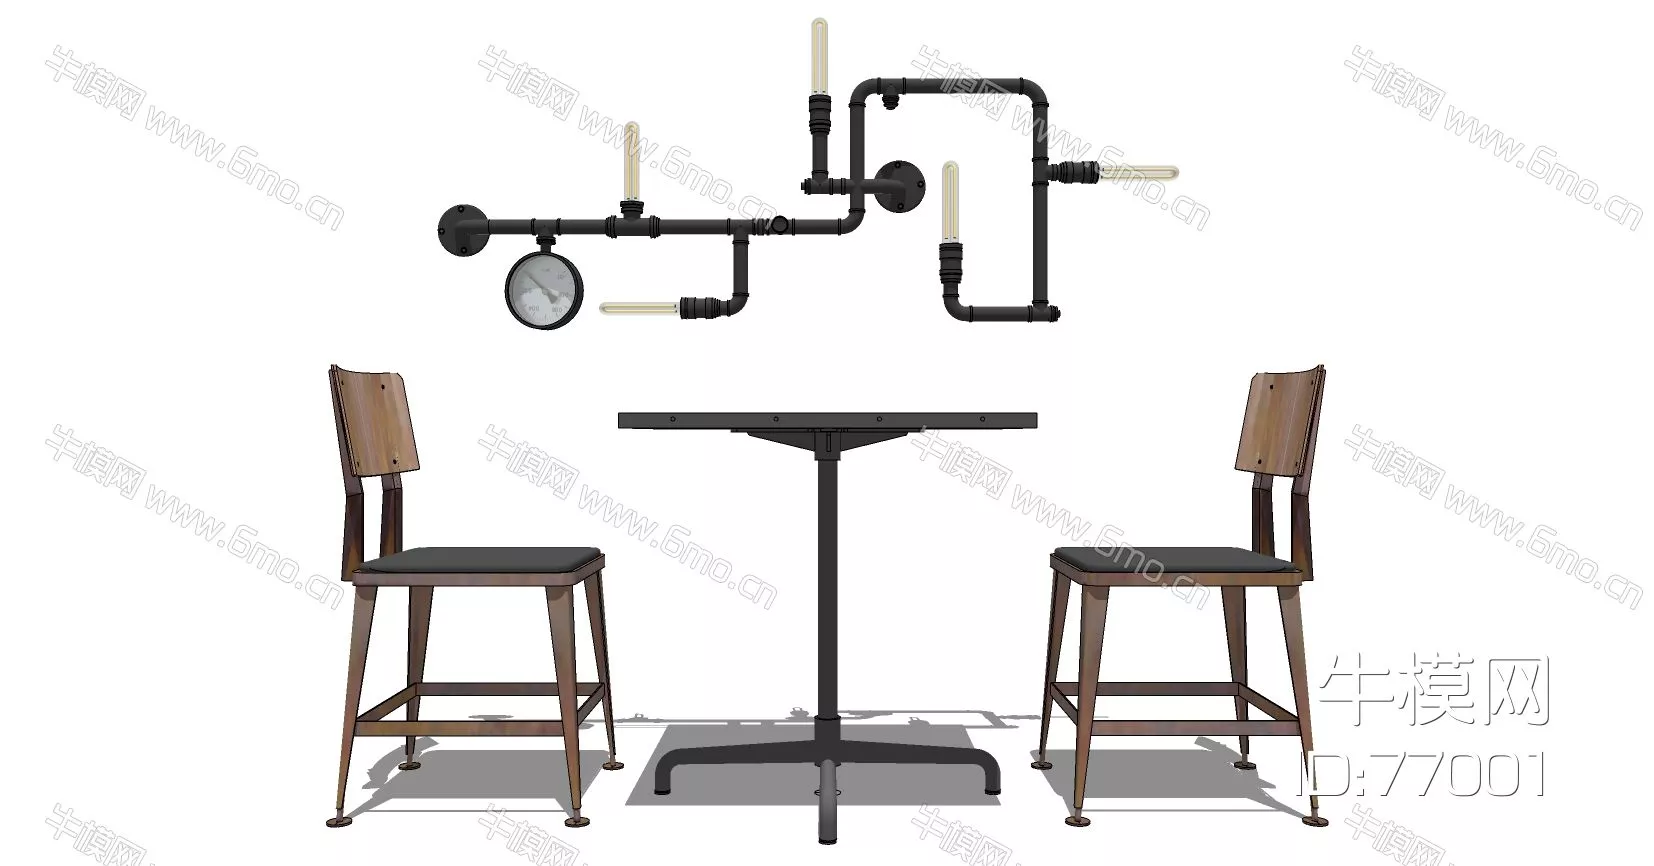 INDUSTRIAL DINING TABLE SET - SKETCHUP 3D MODEL - ENSCAPE - 77001